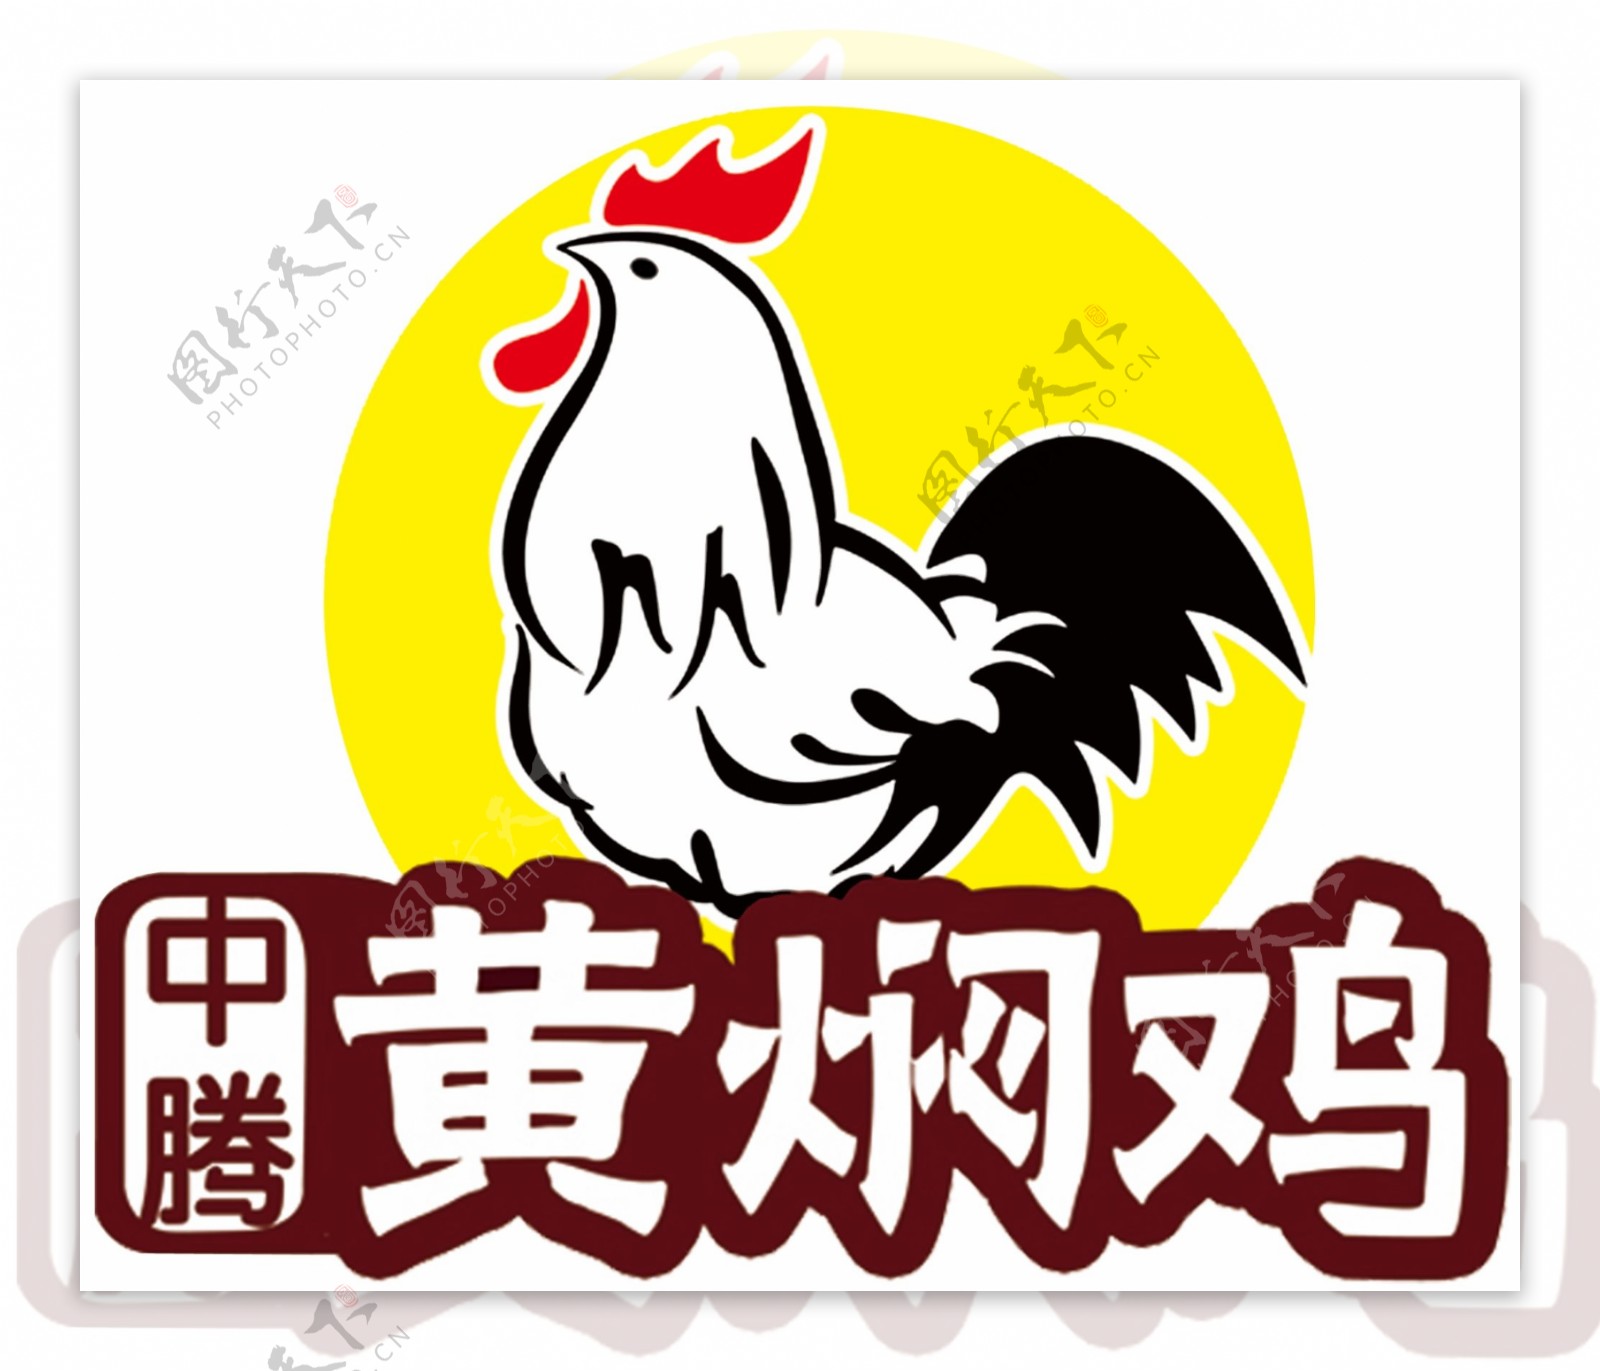 黄焖鸡logo